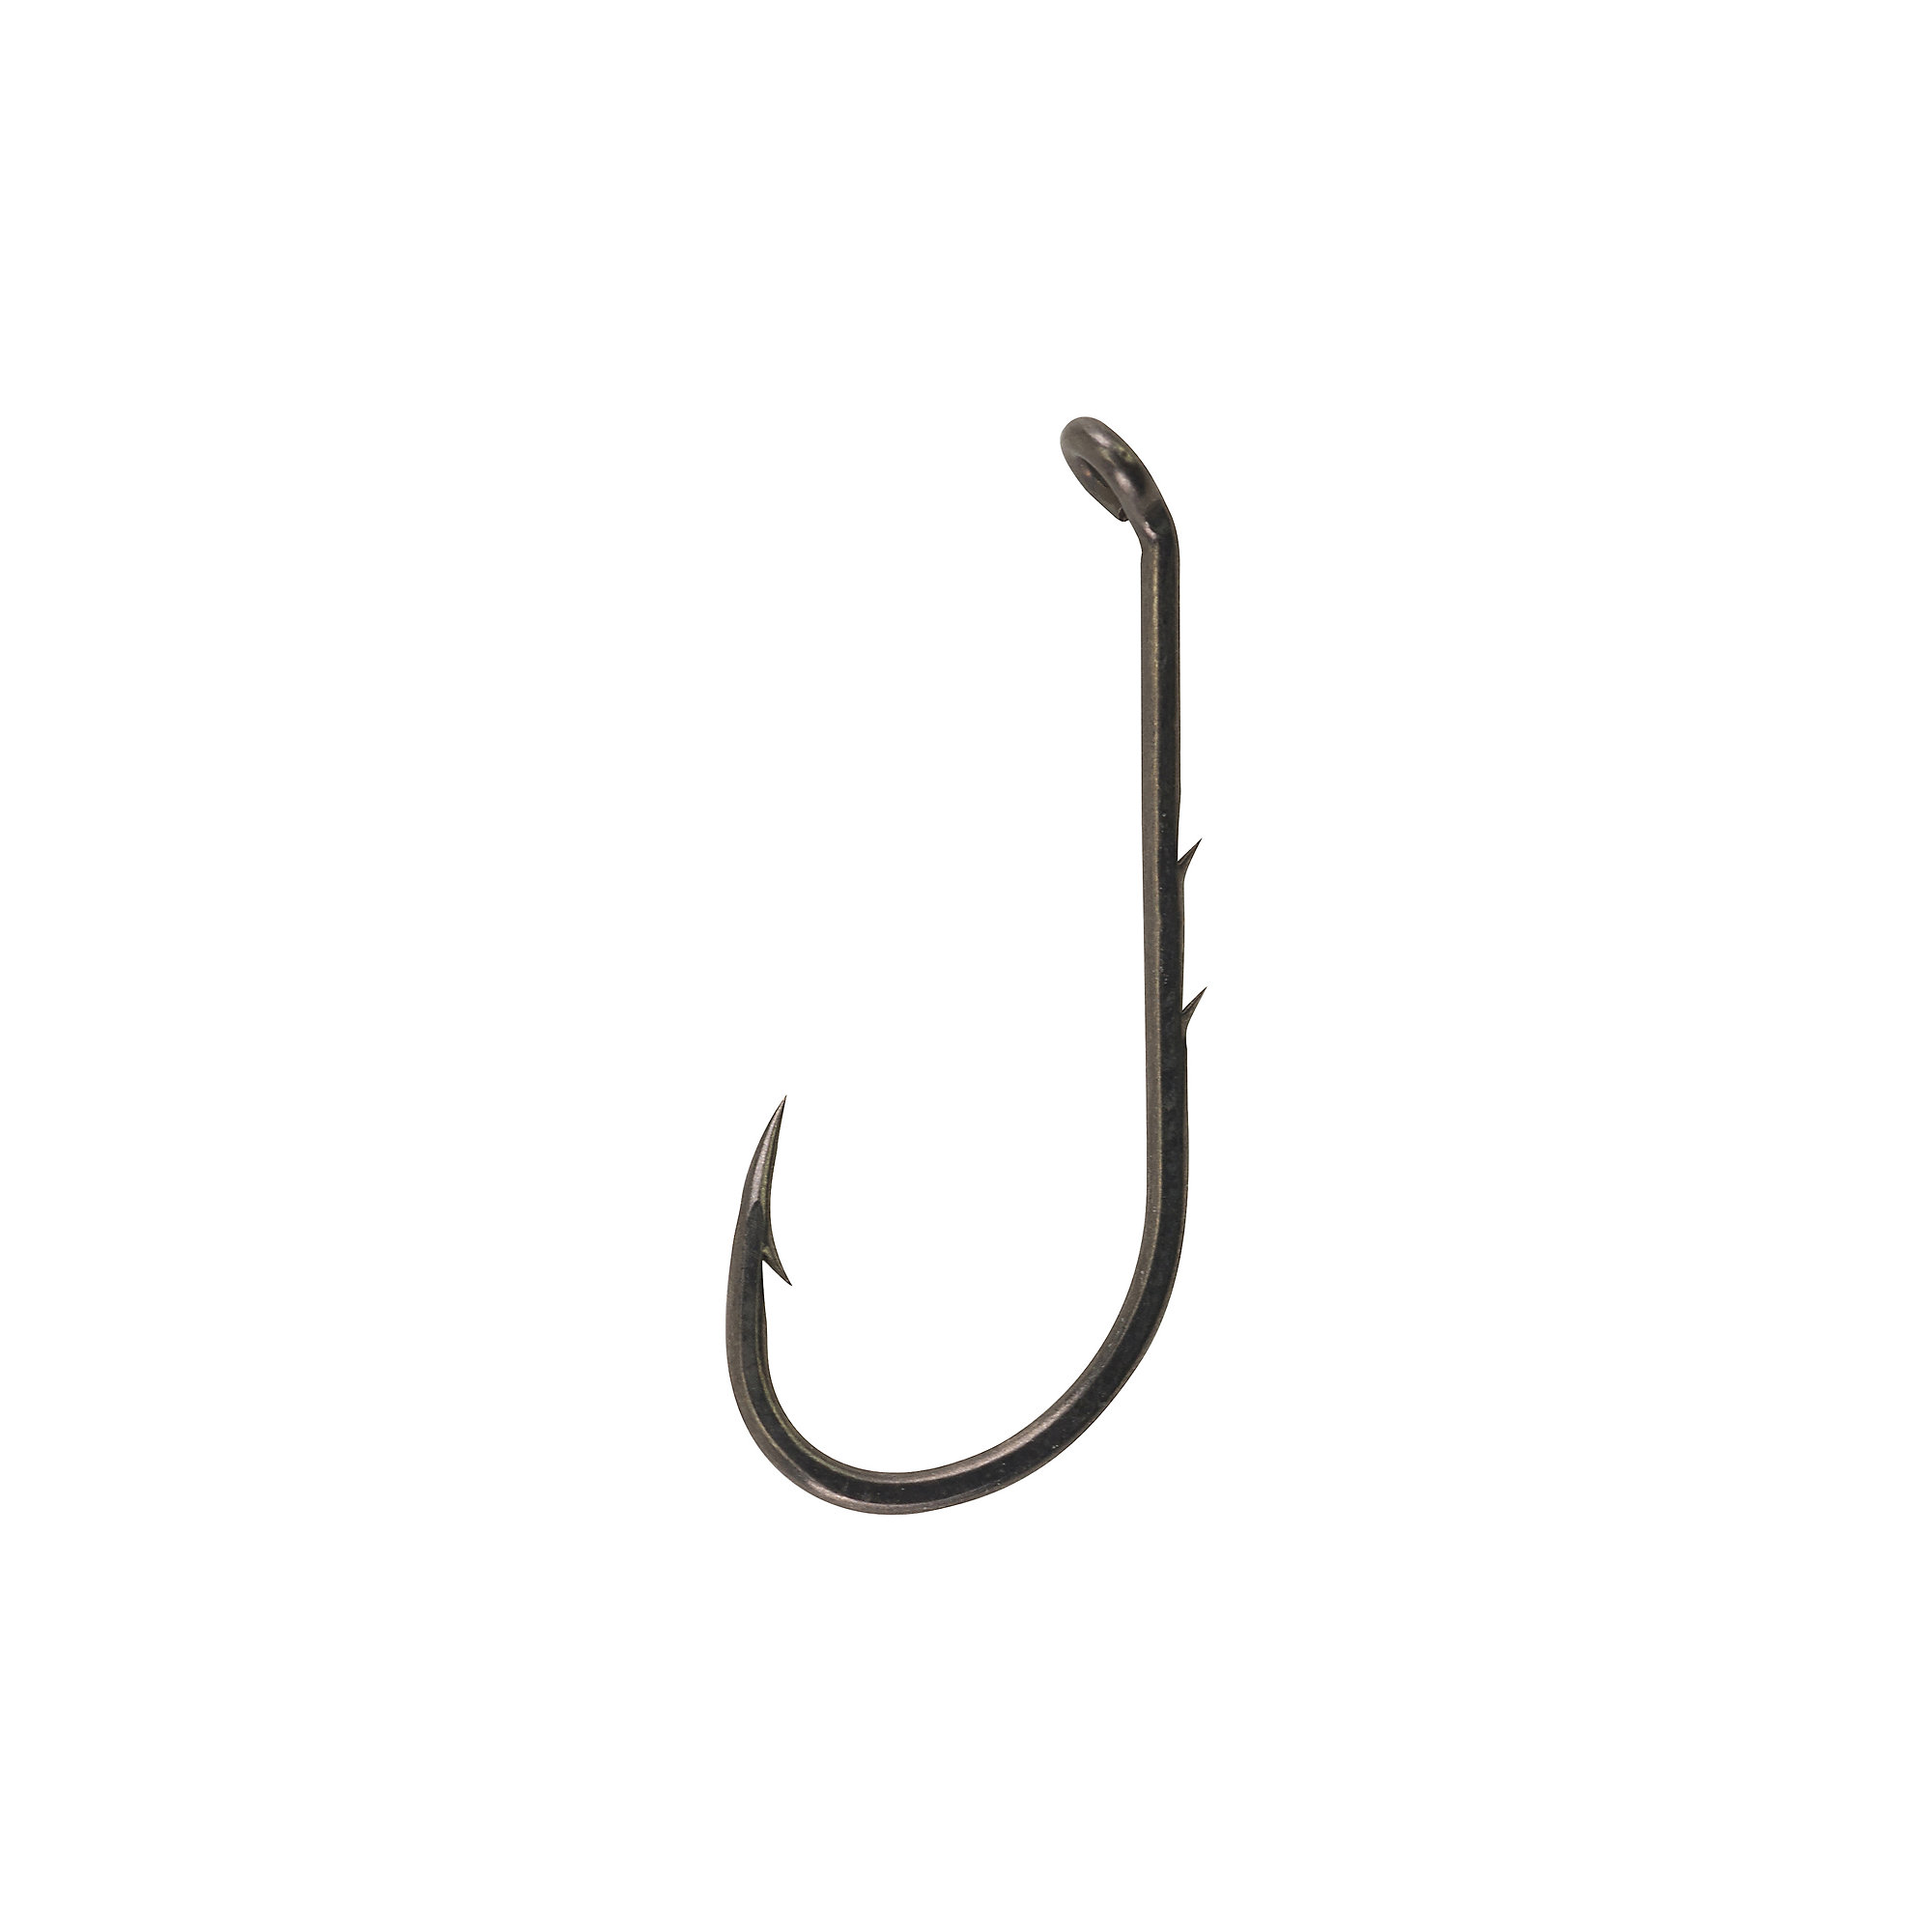 https://cdn.fishingmegastore.com/hires/berkley/fusion19-baitholder-hooks.jpg